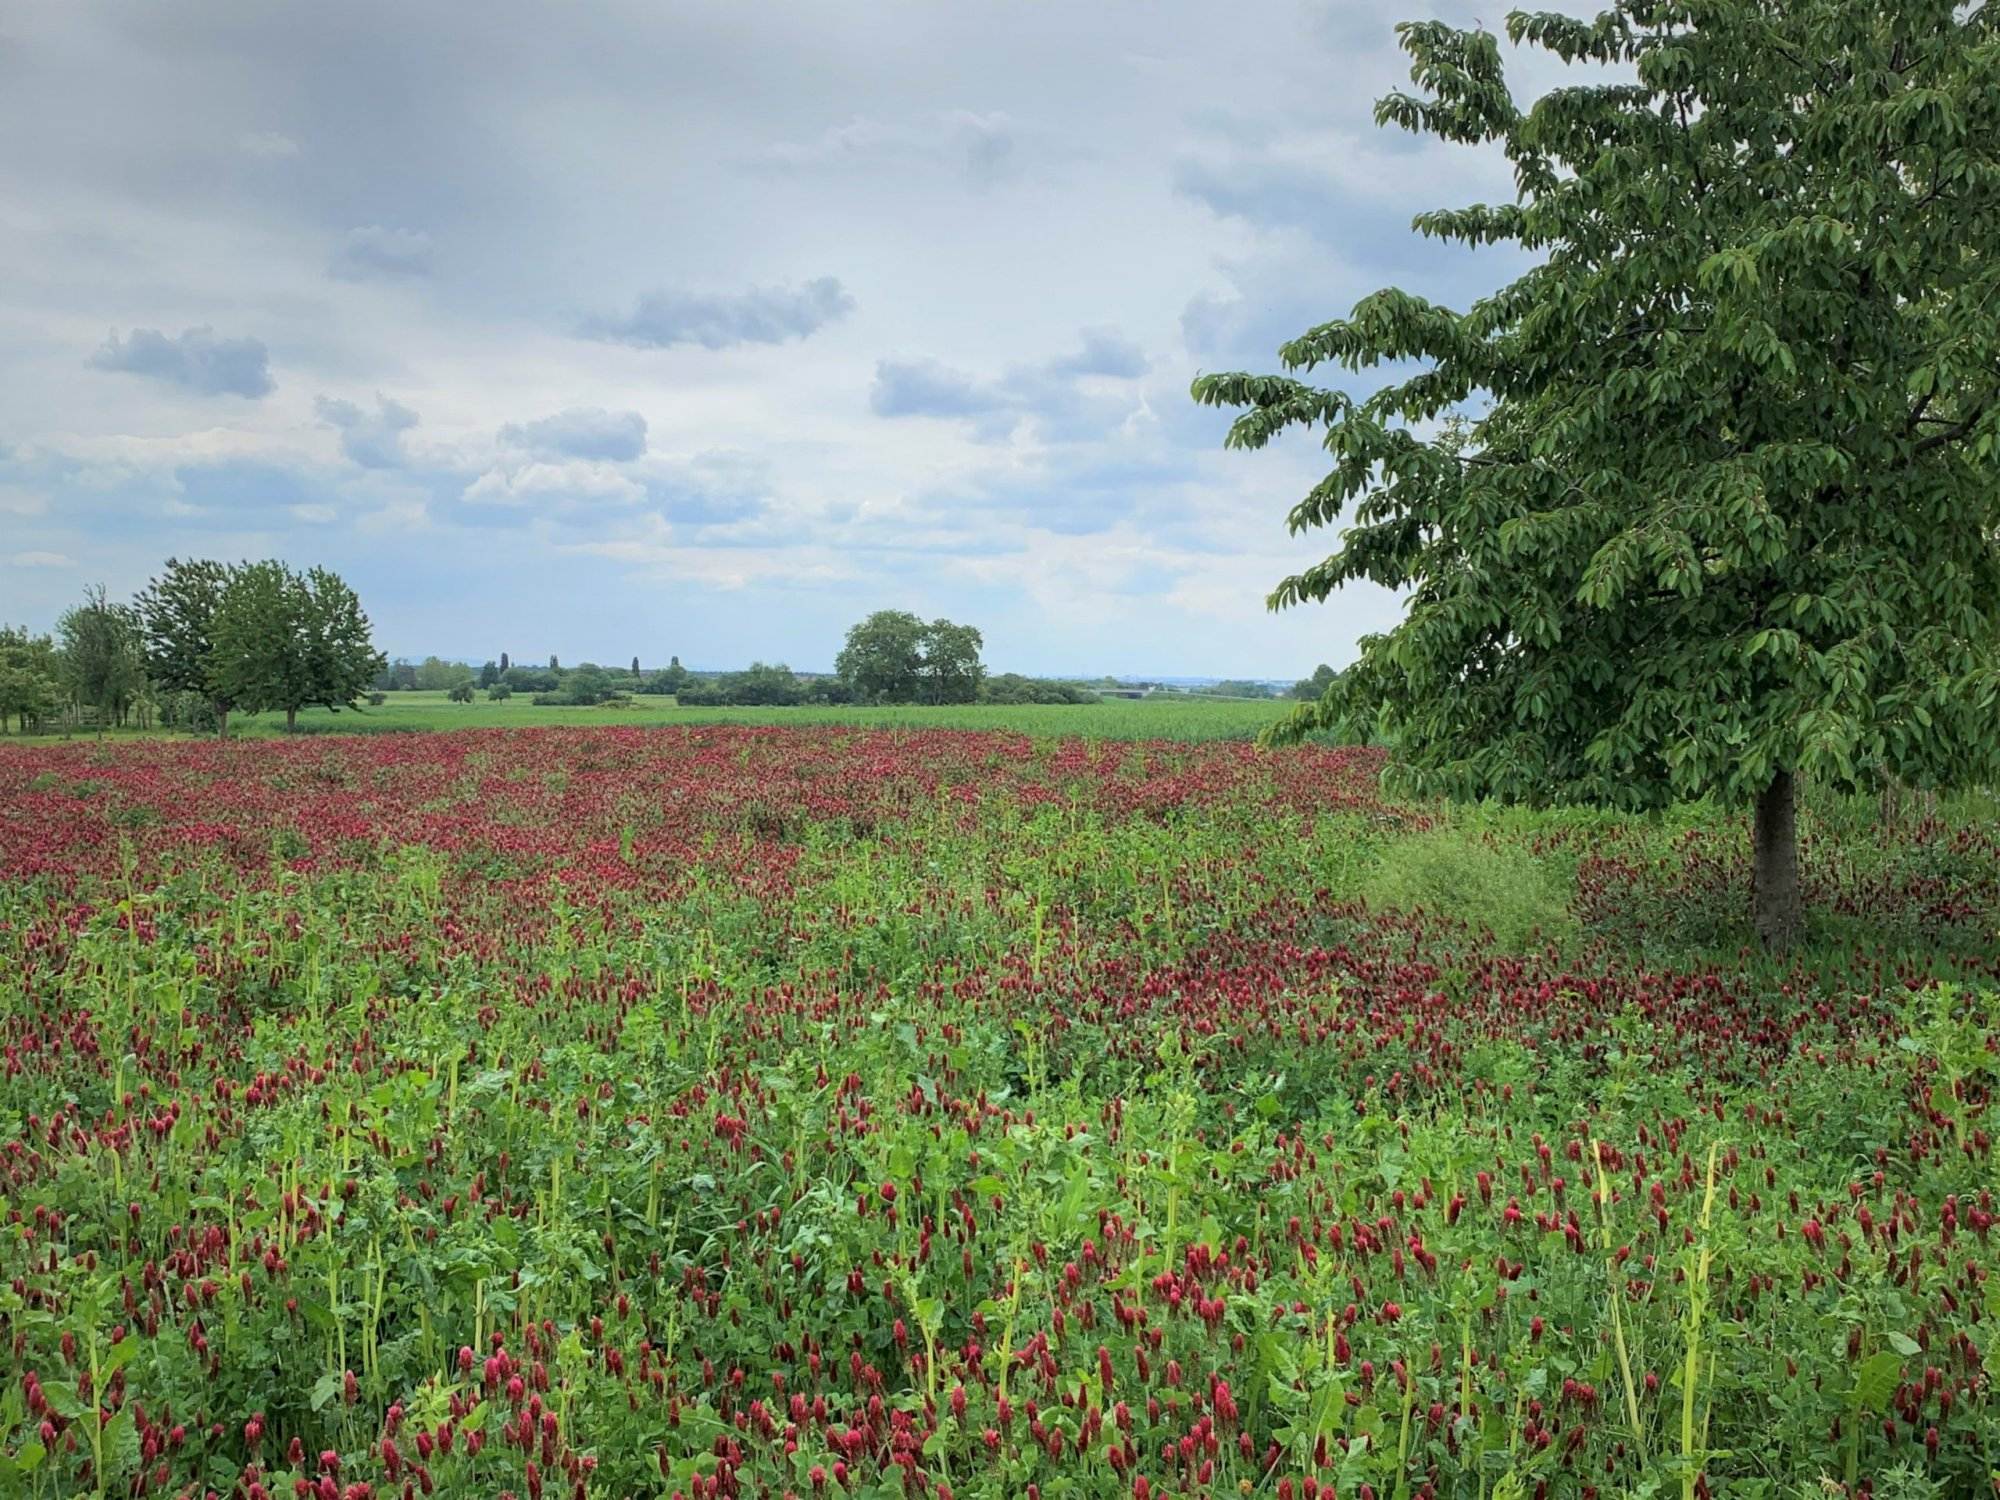 Ein Feld voller roter Blumen mit einem Baum im Hintergrund.